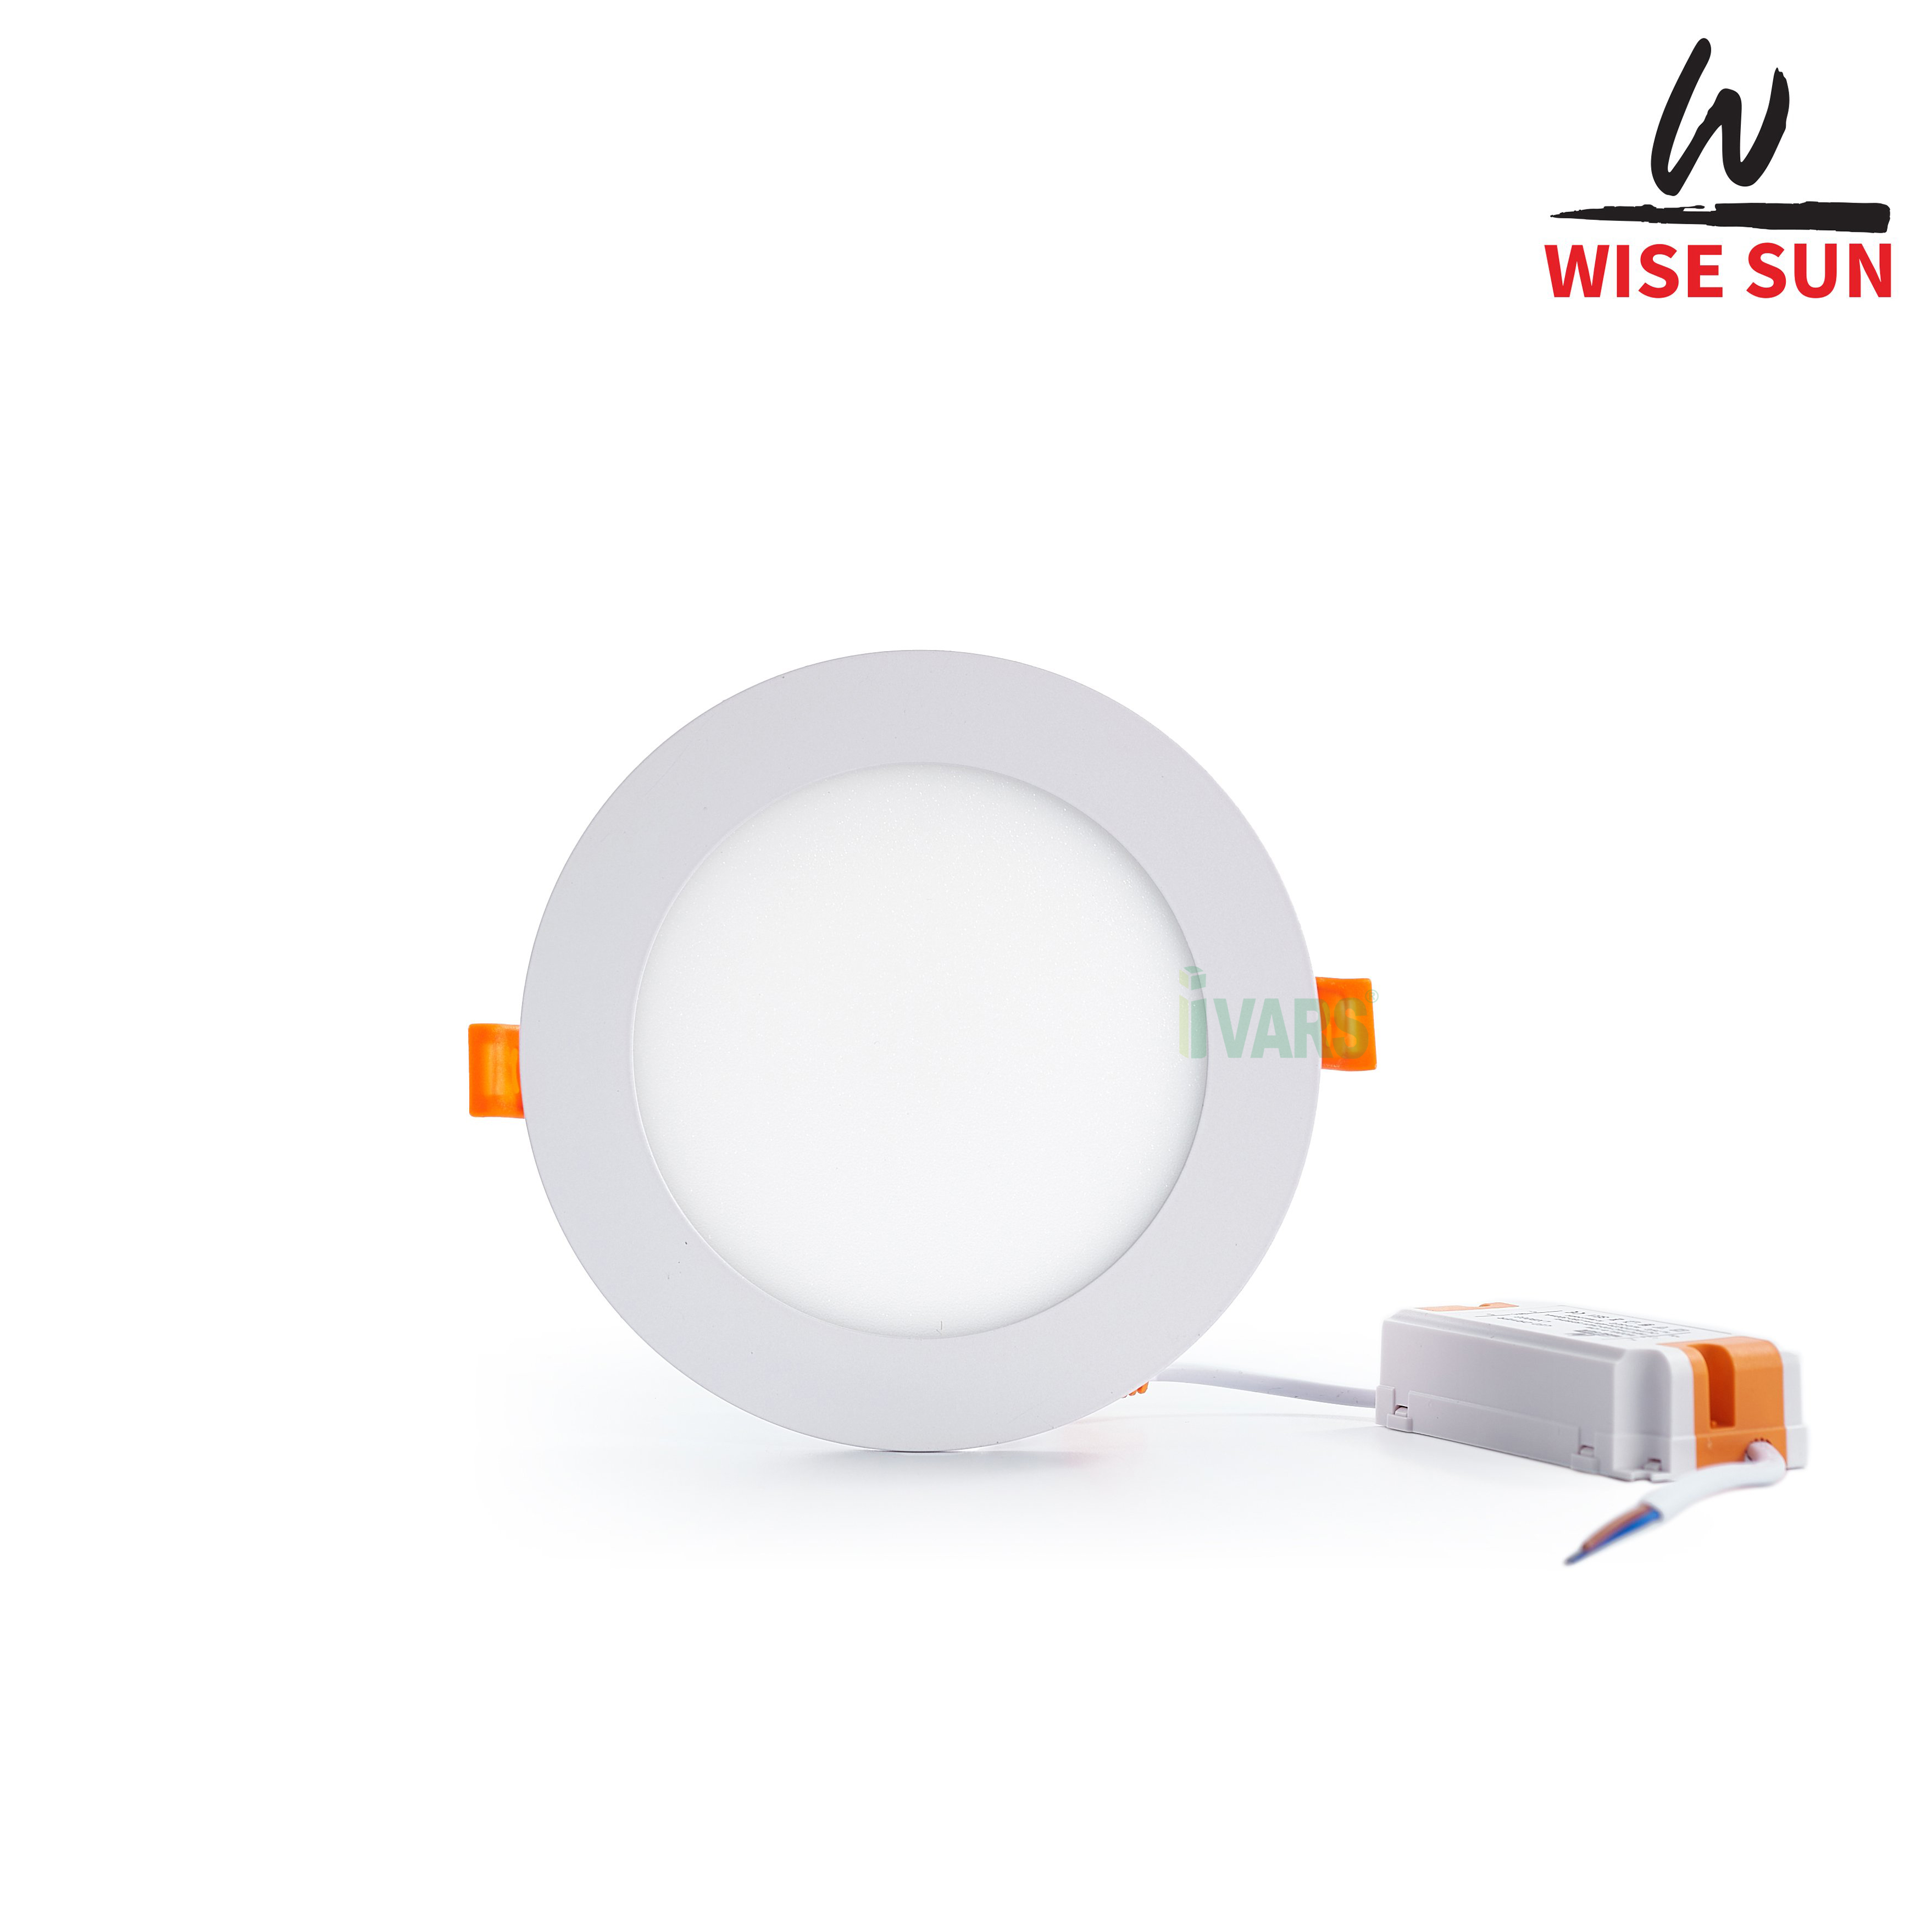 Đèn LED panel âm trần Wise Sun giá rẻ - chất lượng 9W - đổi màu